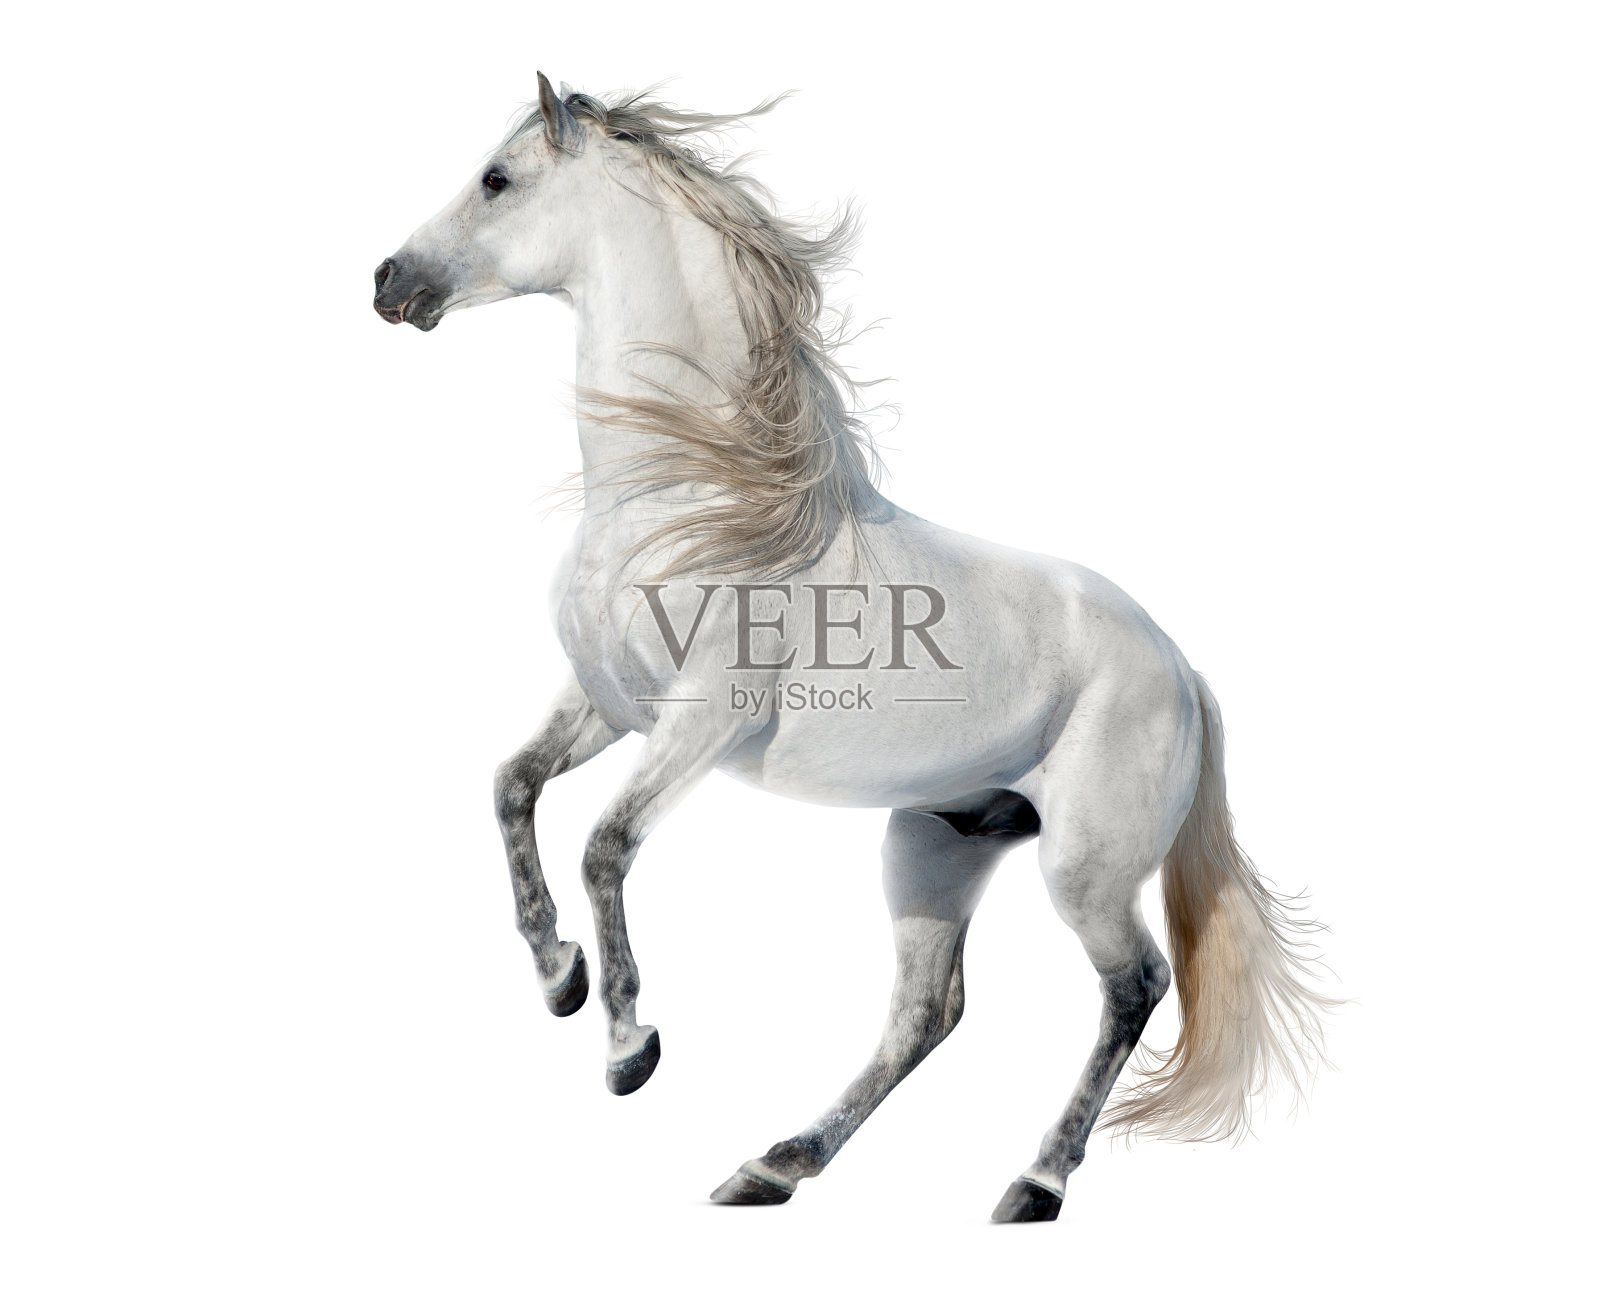 自由的马孤立在白色背景上照片摄影图片